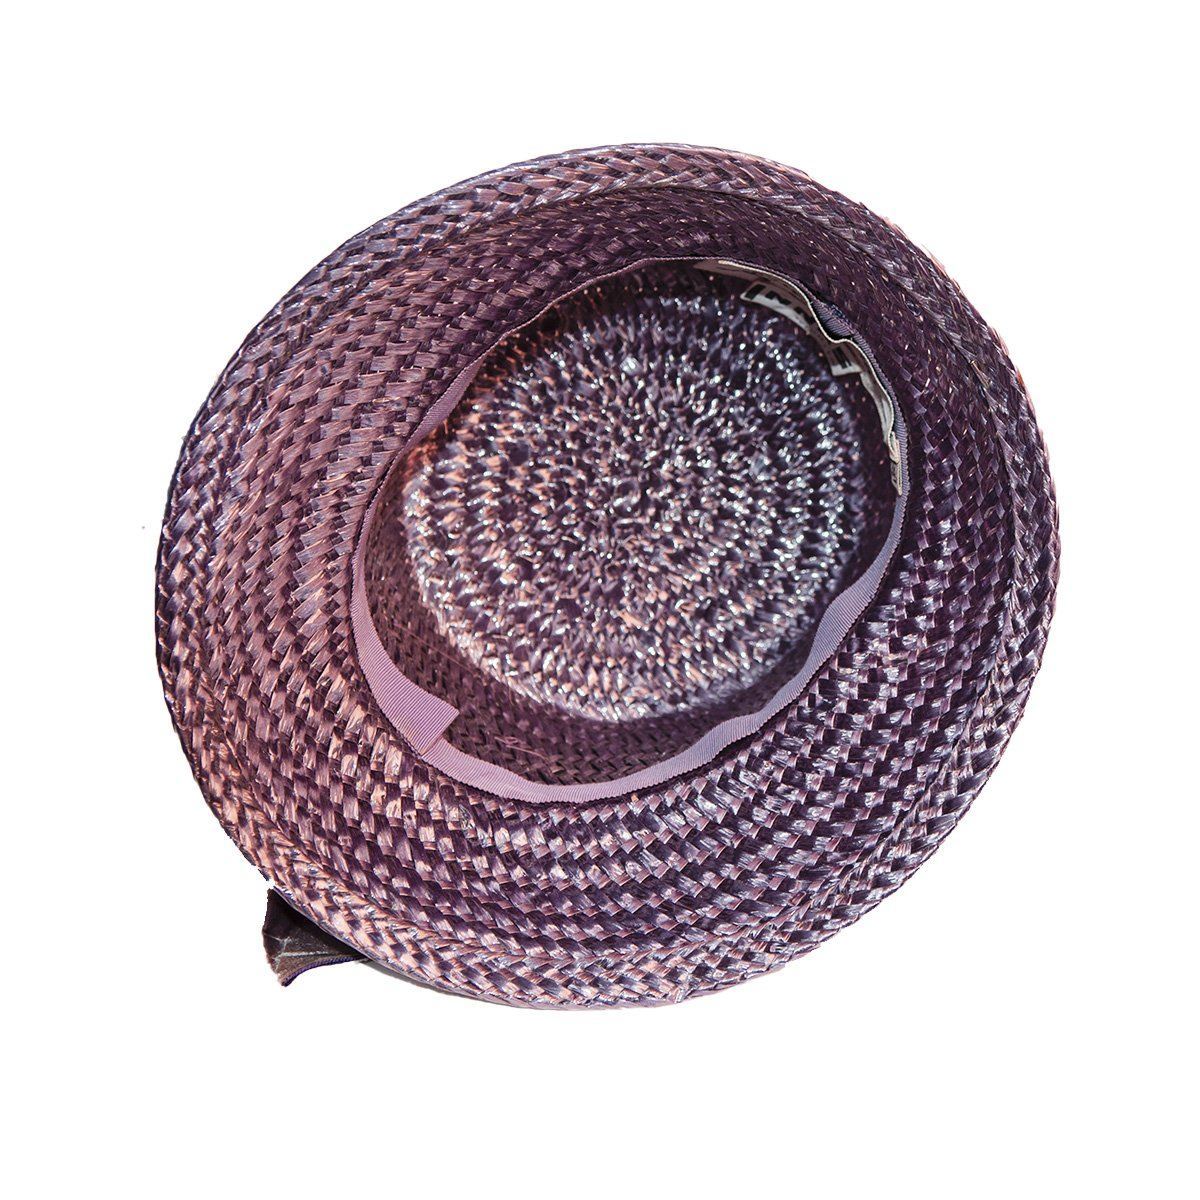 Vintage purple hat